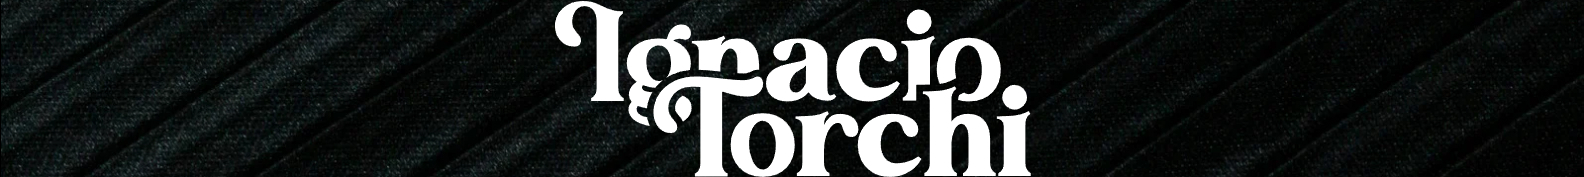 Ignacio Torchi's profile banner